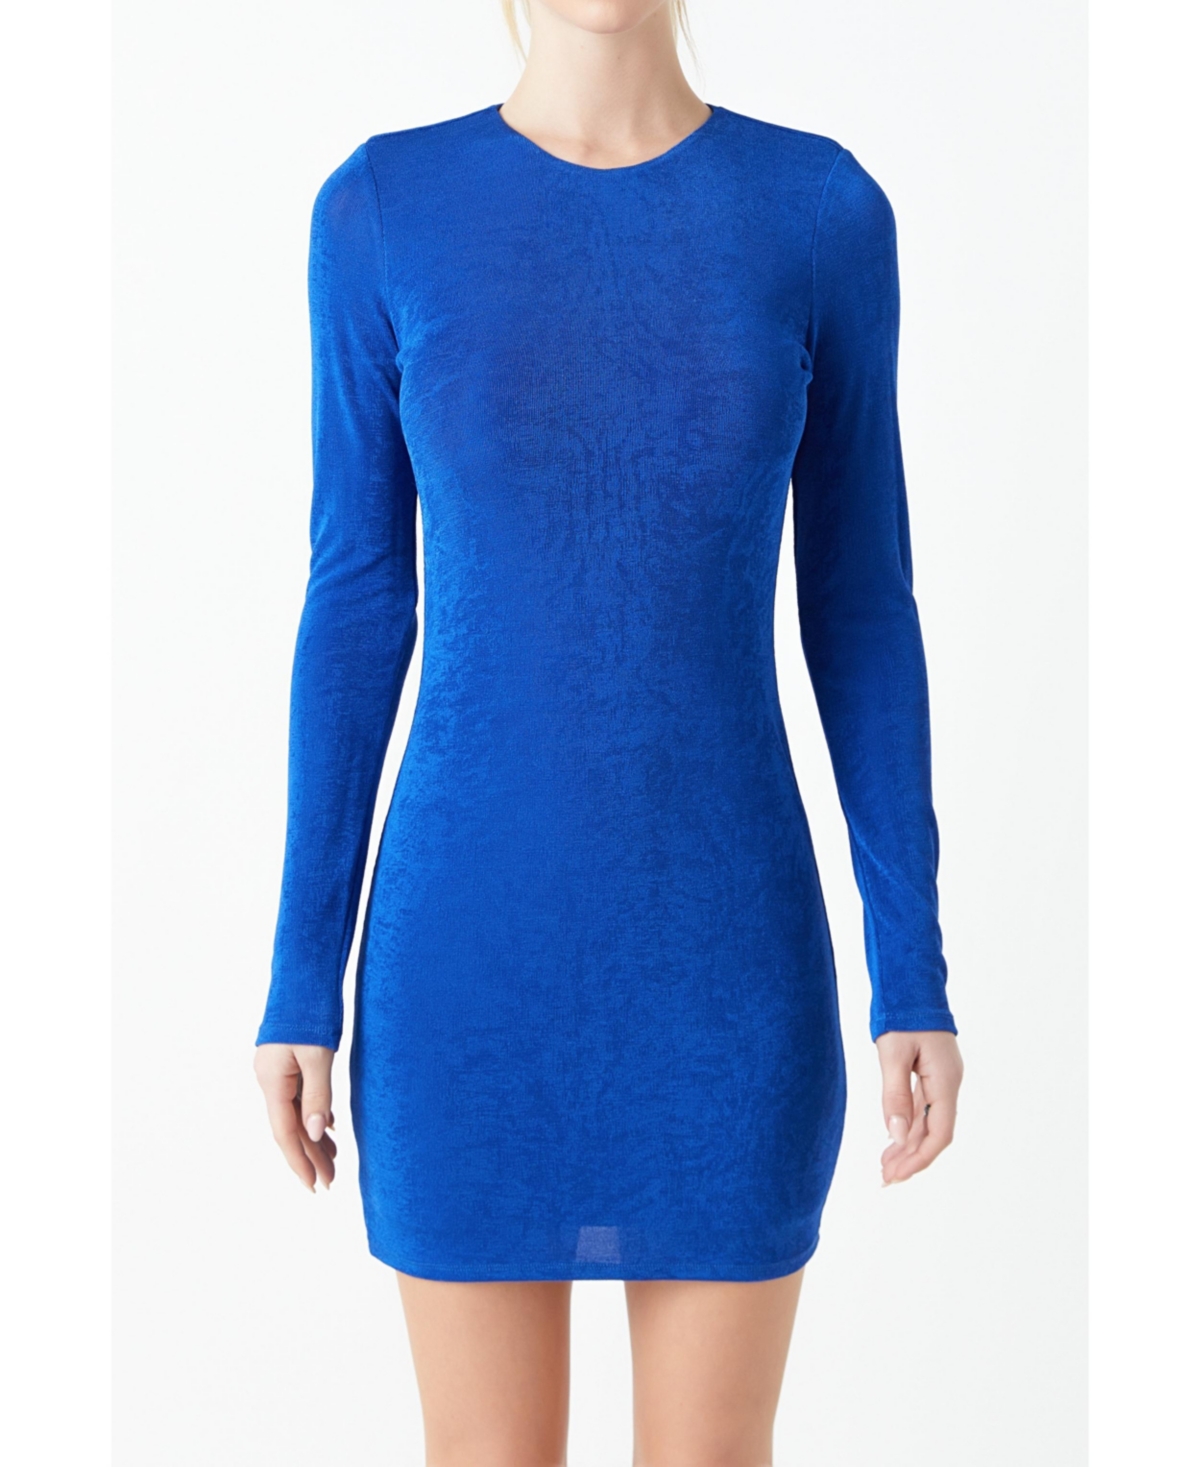 Women's Slinky Mini Dress - Blue